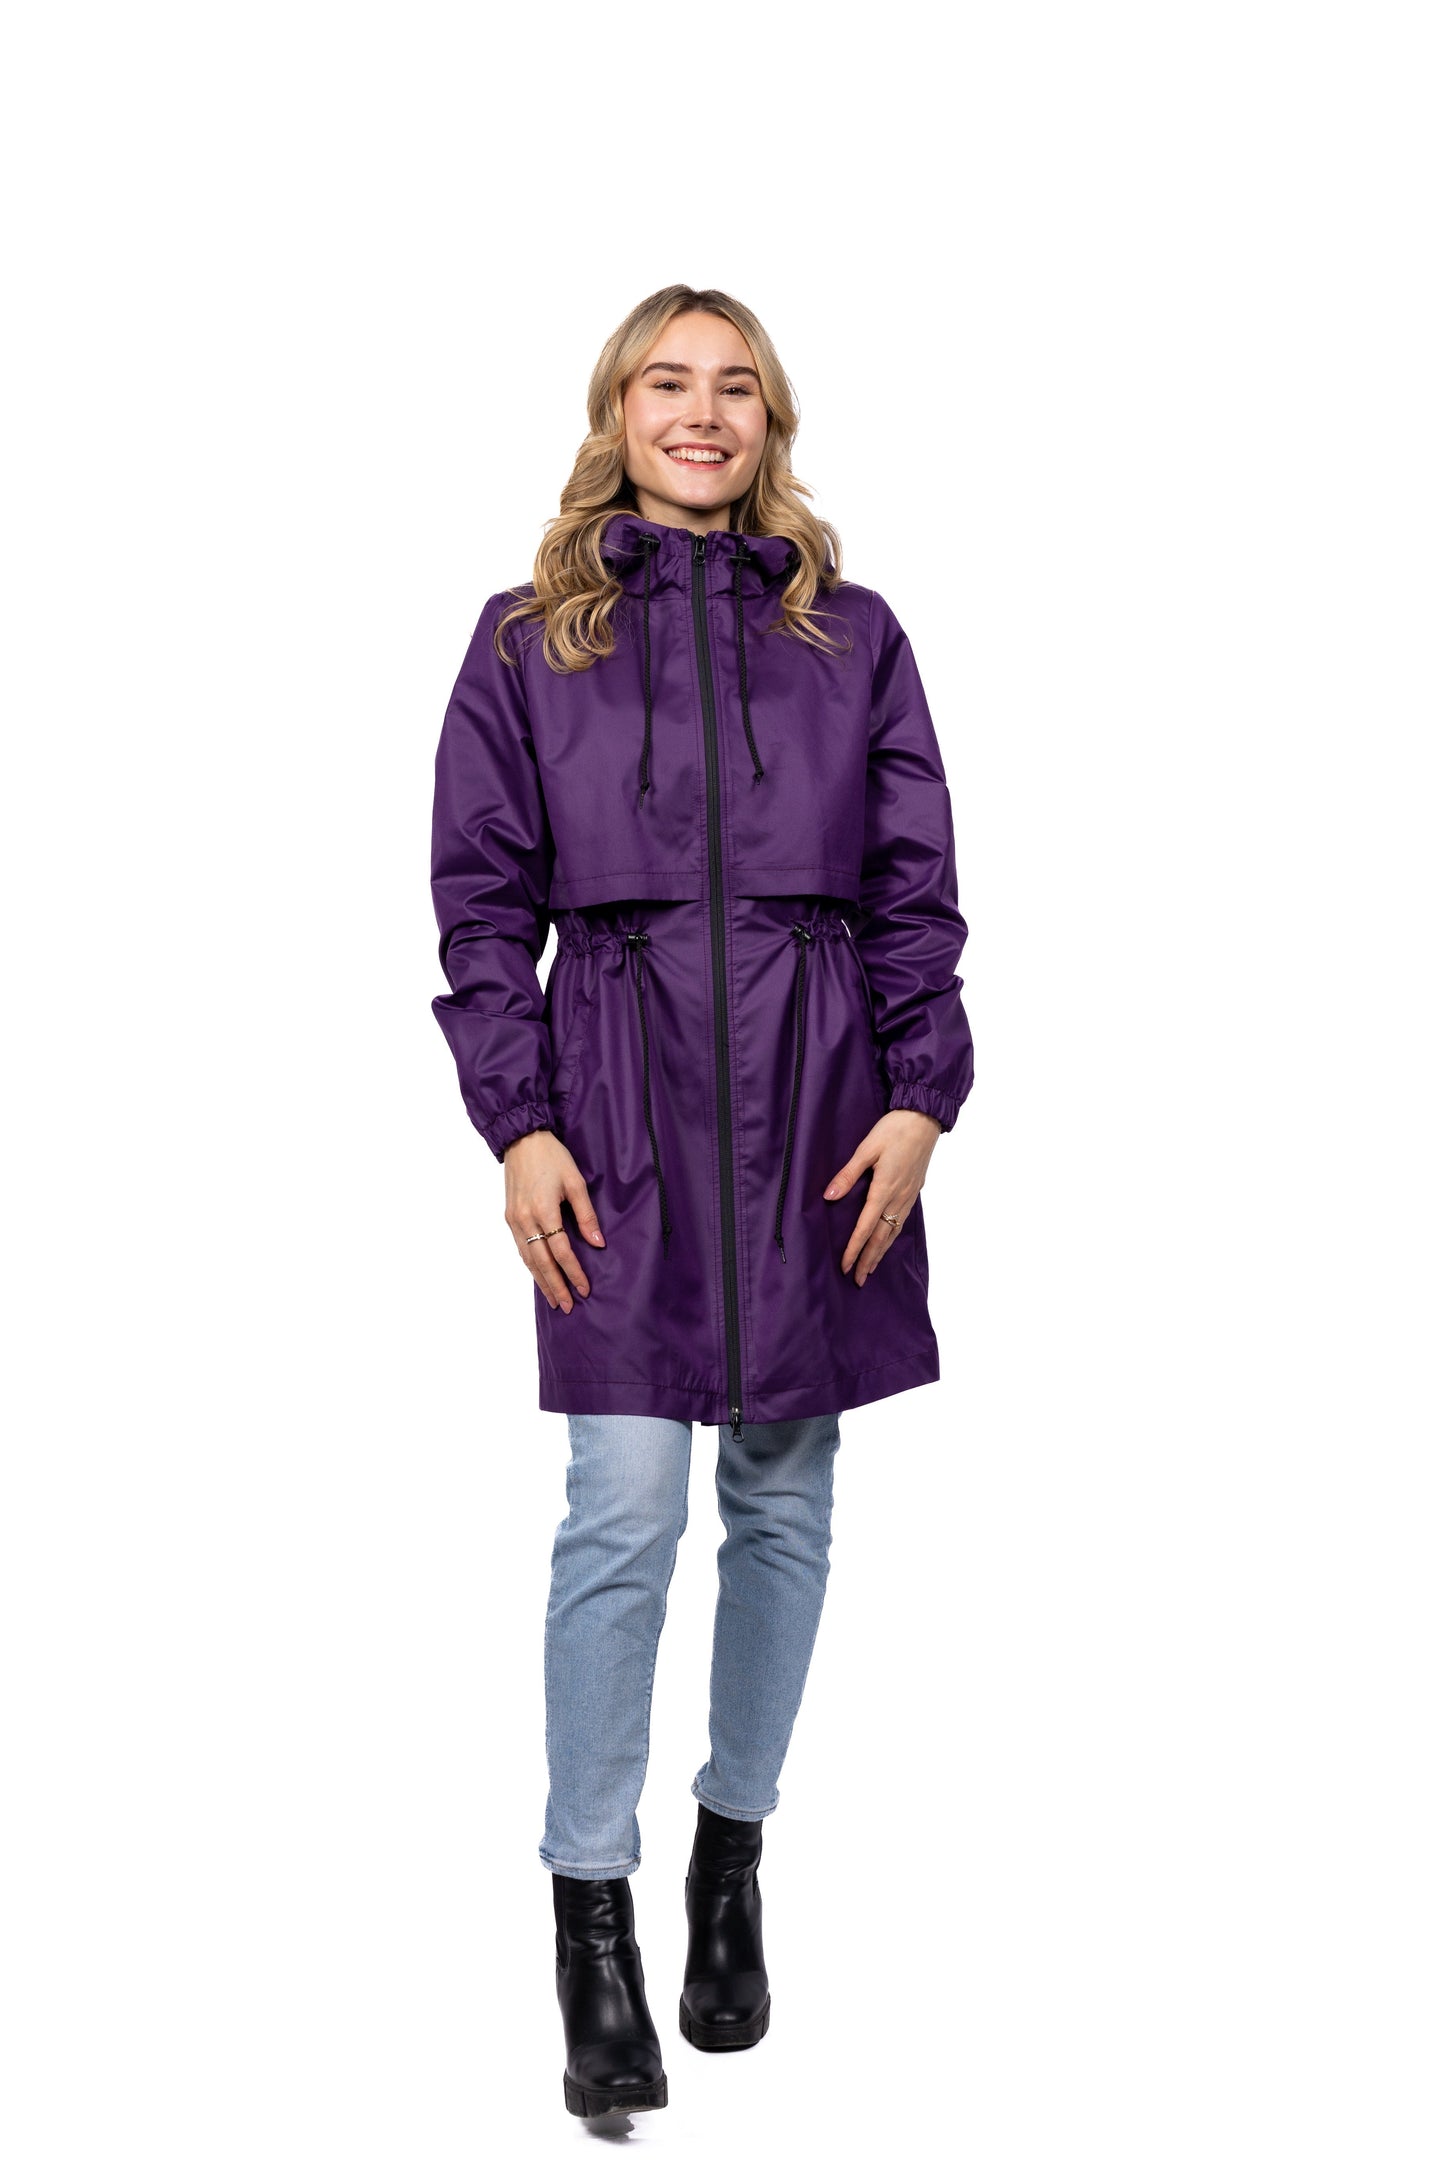 Desloups manteau imperméable urbain avec capuchon, ajusté pour femme - Violet